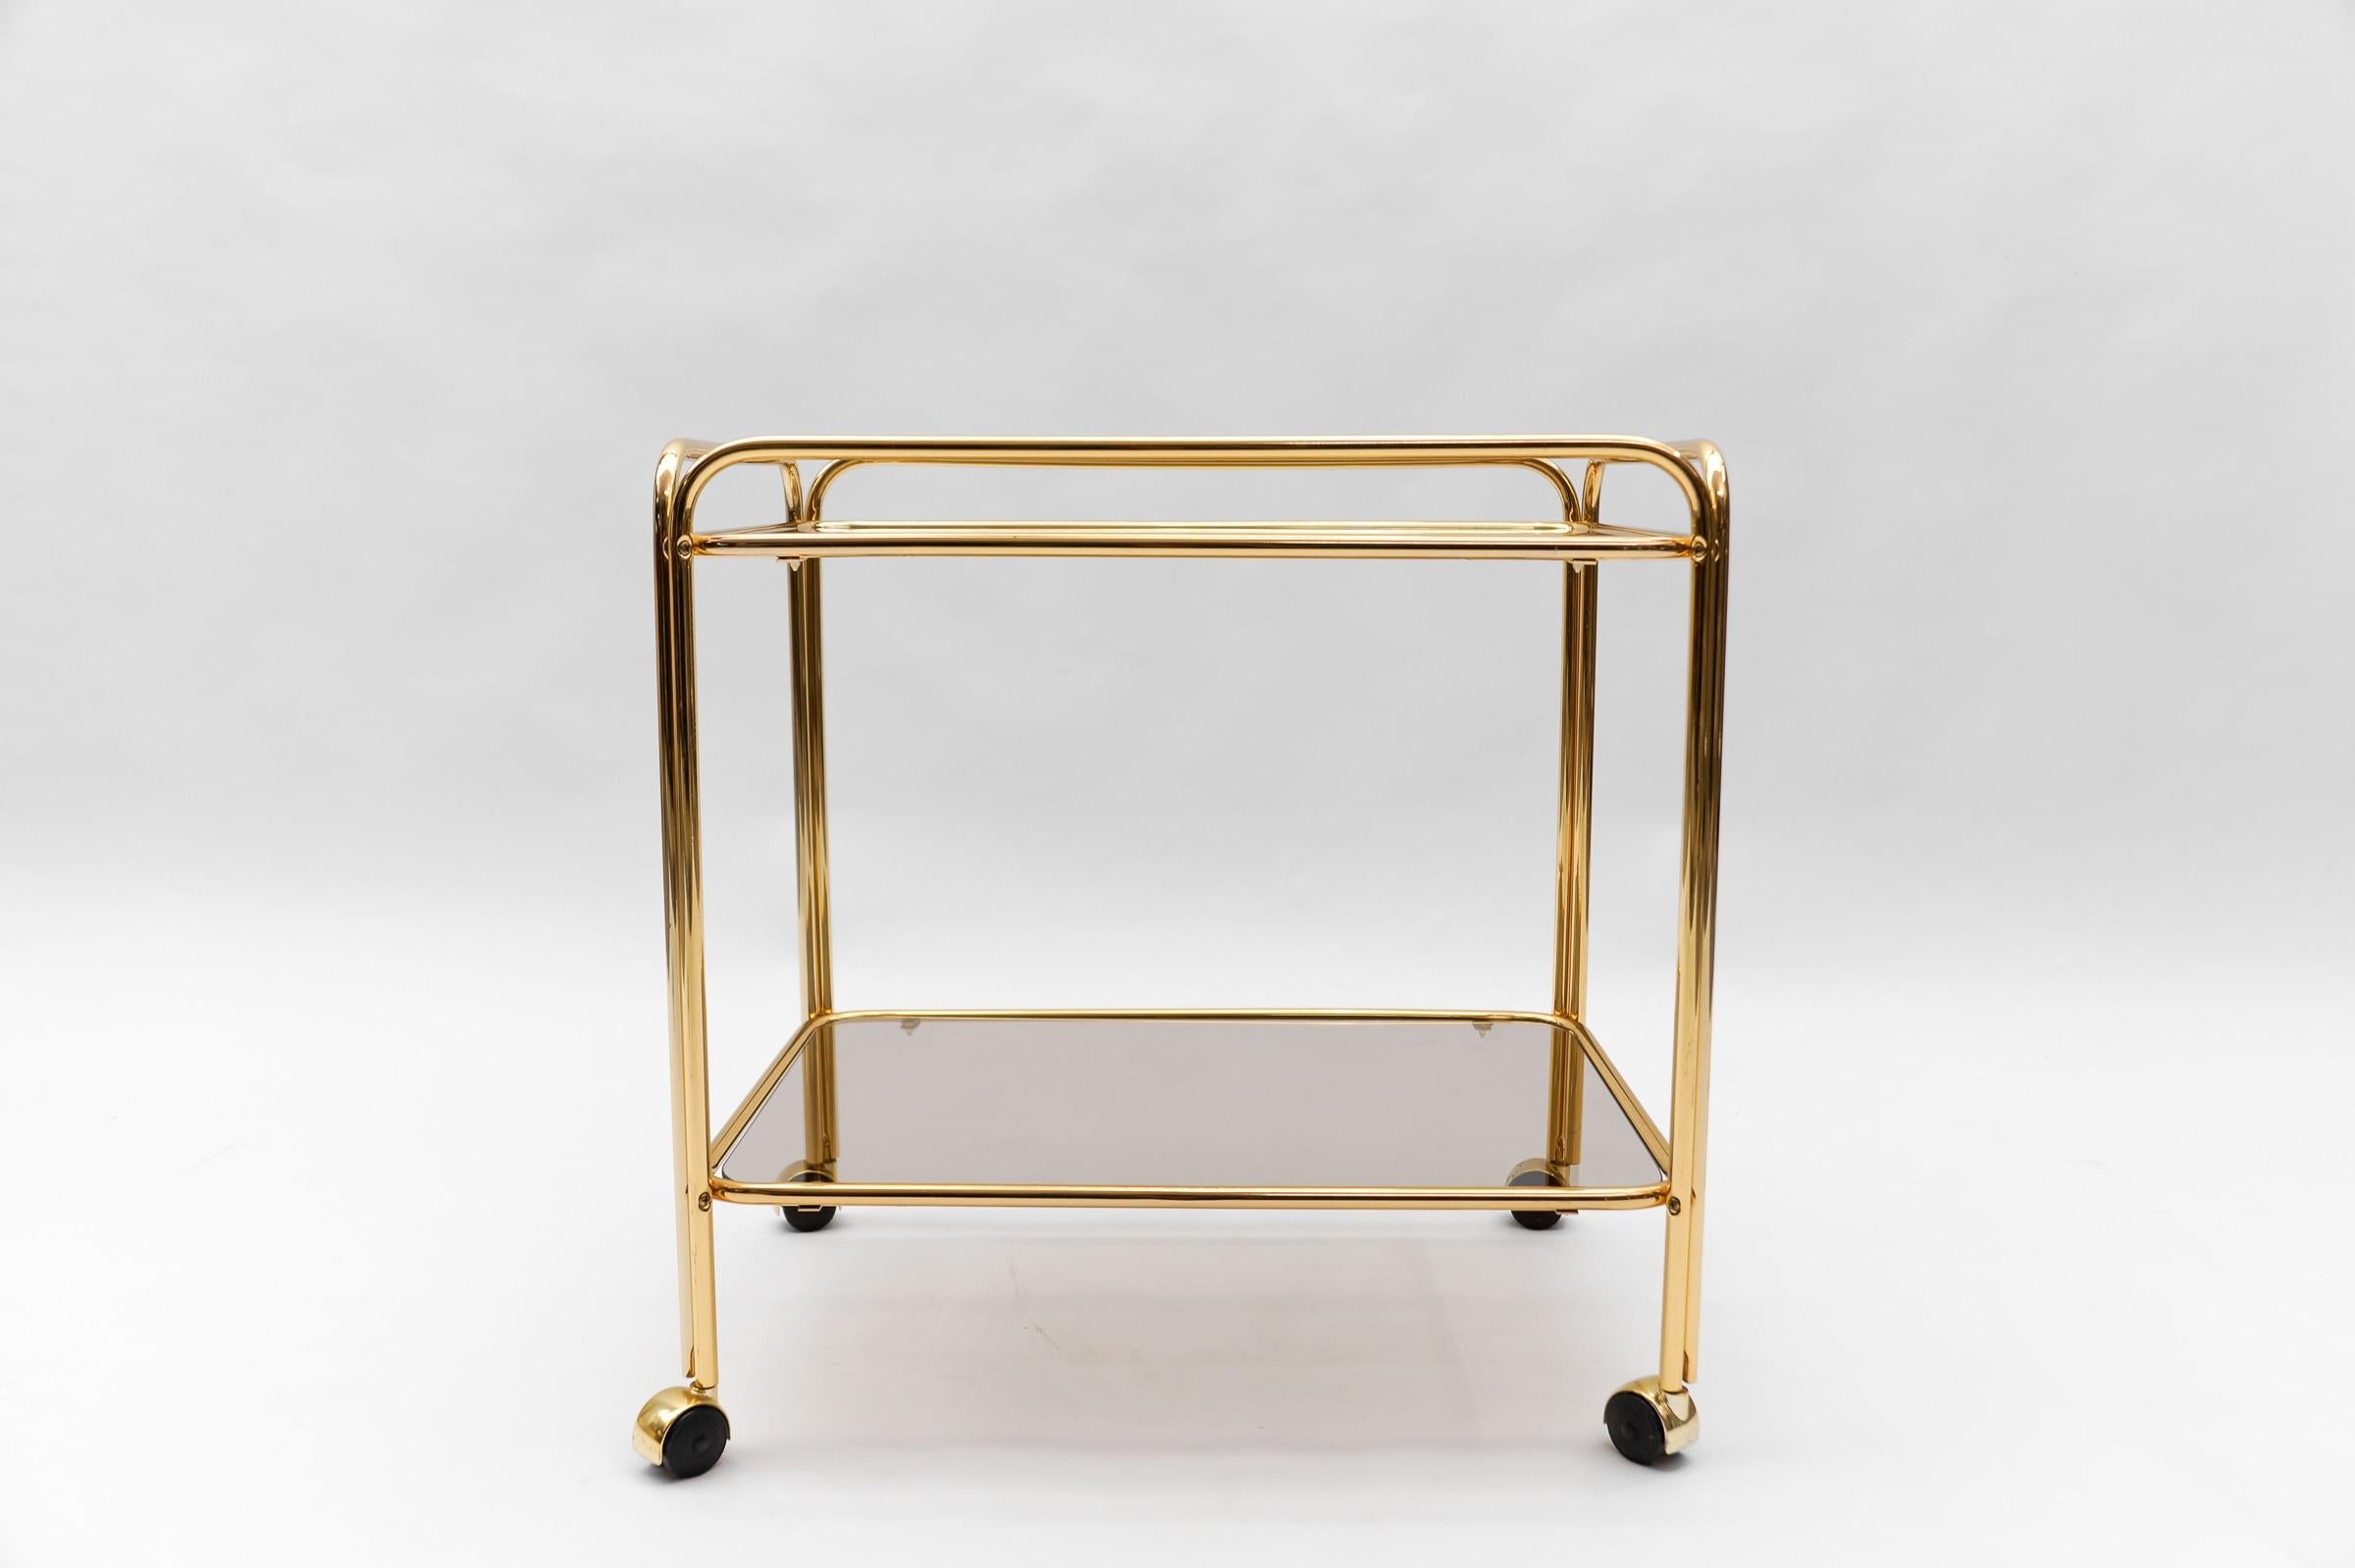  Lovely Elegant Mid-Century Modern Brass Bar Cart, 1960s, France For Sale 6